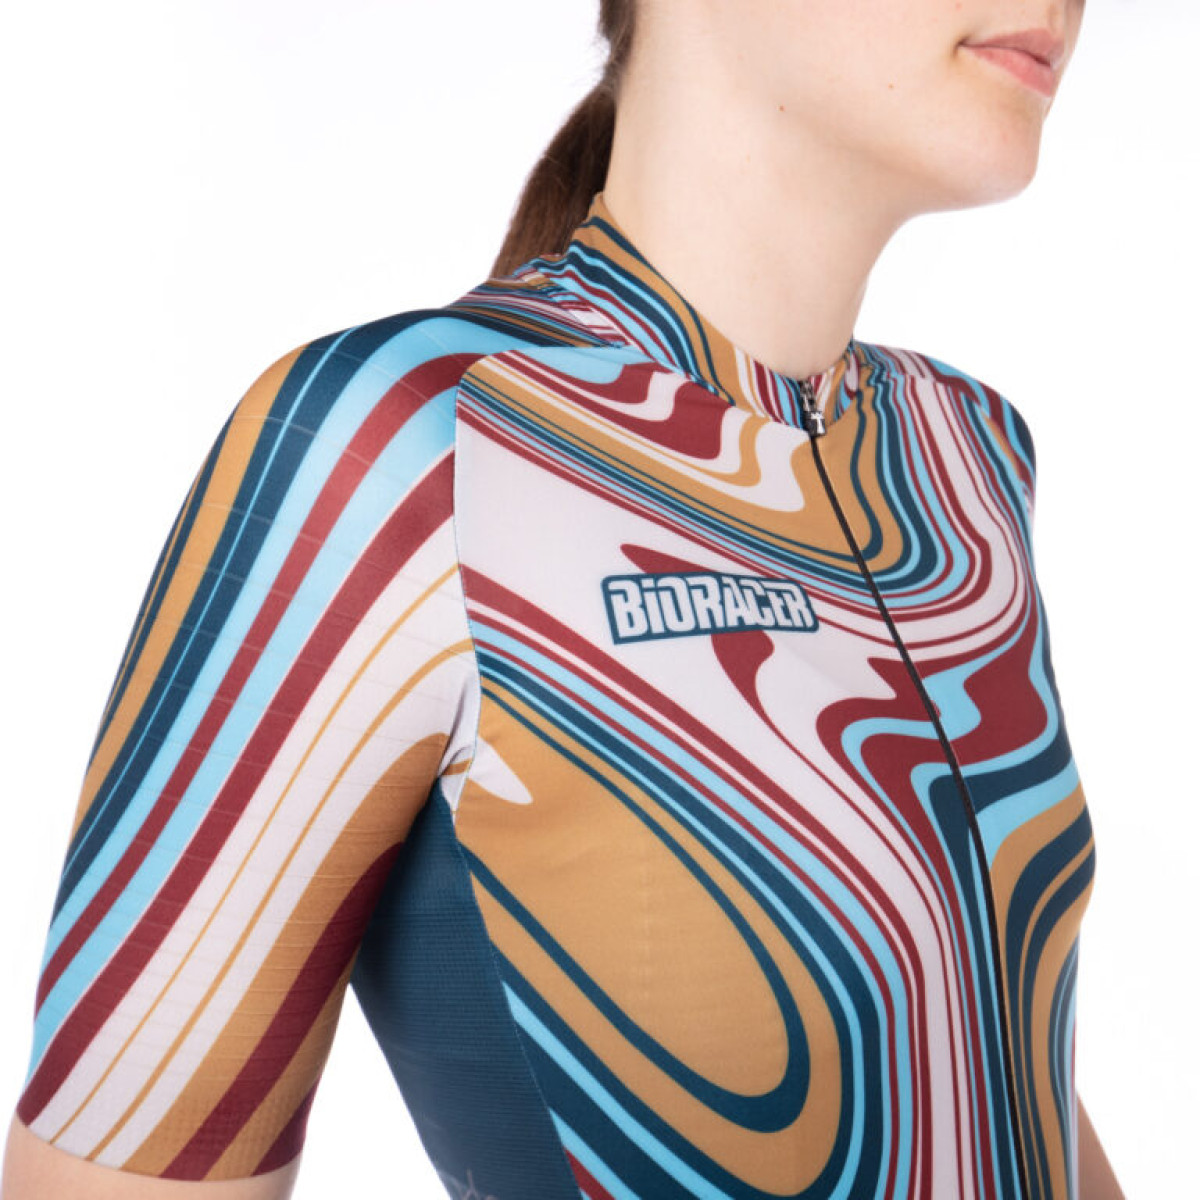 Bioracer Epic moteriški marškinėliai / Liquid Lola Blue